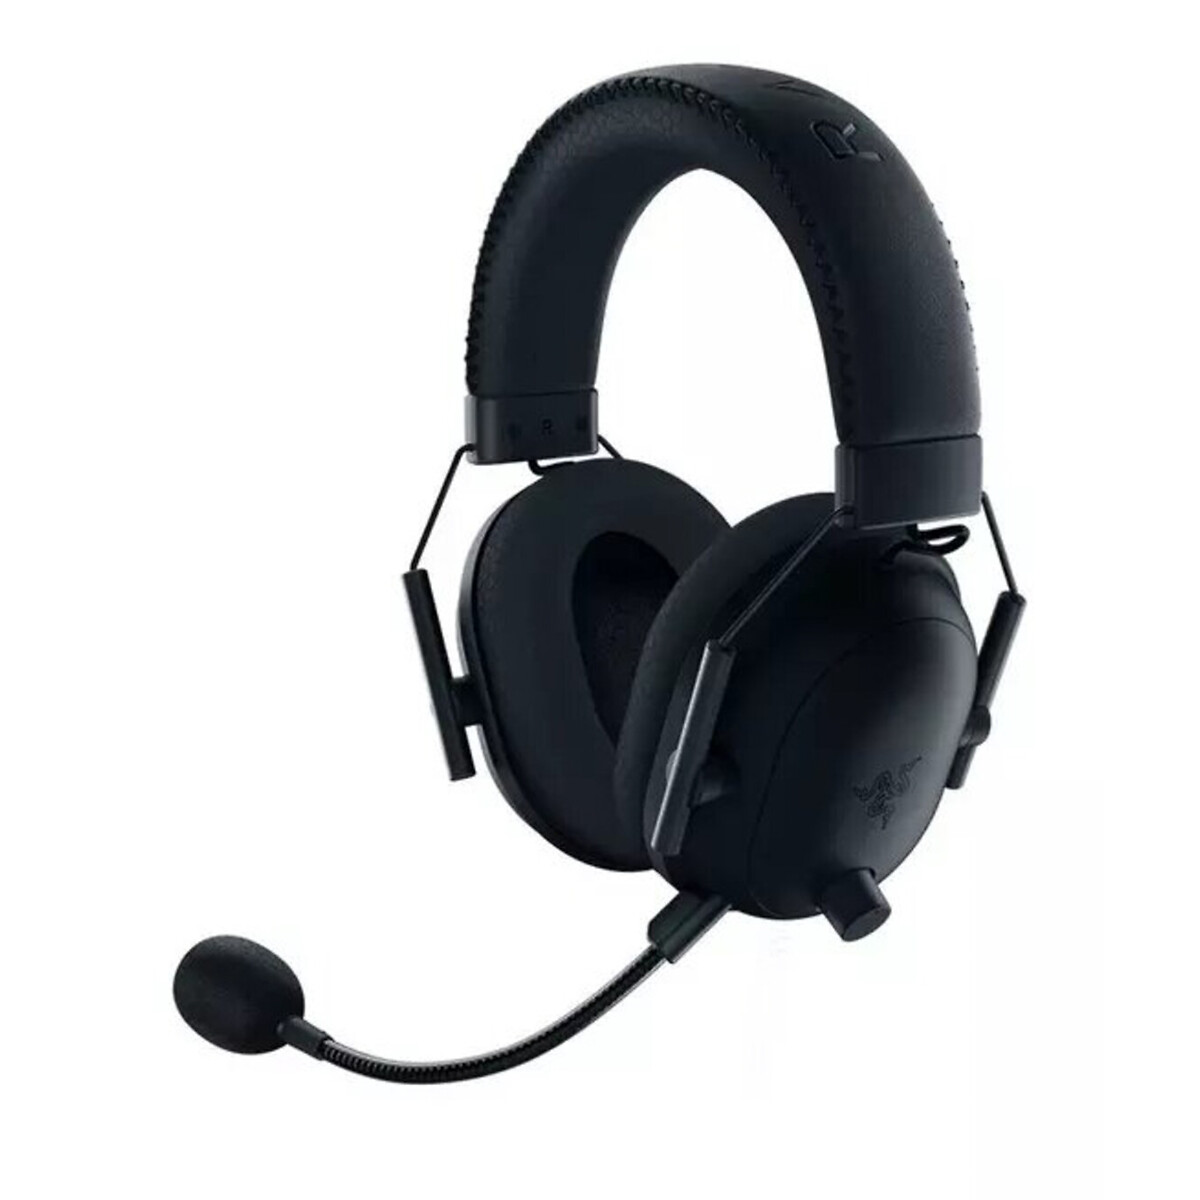 Blackshark V2 Pro Gaming Headset - Black